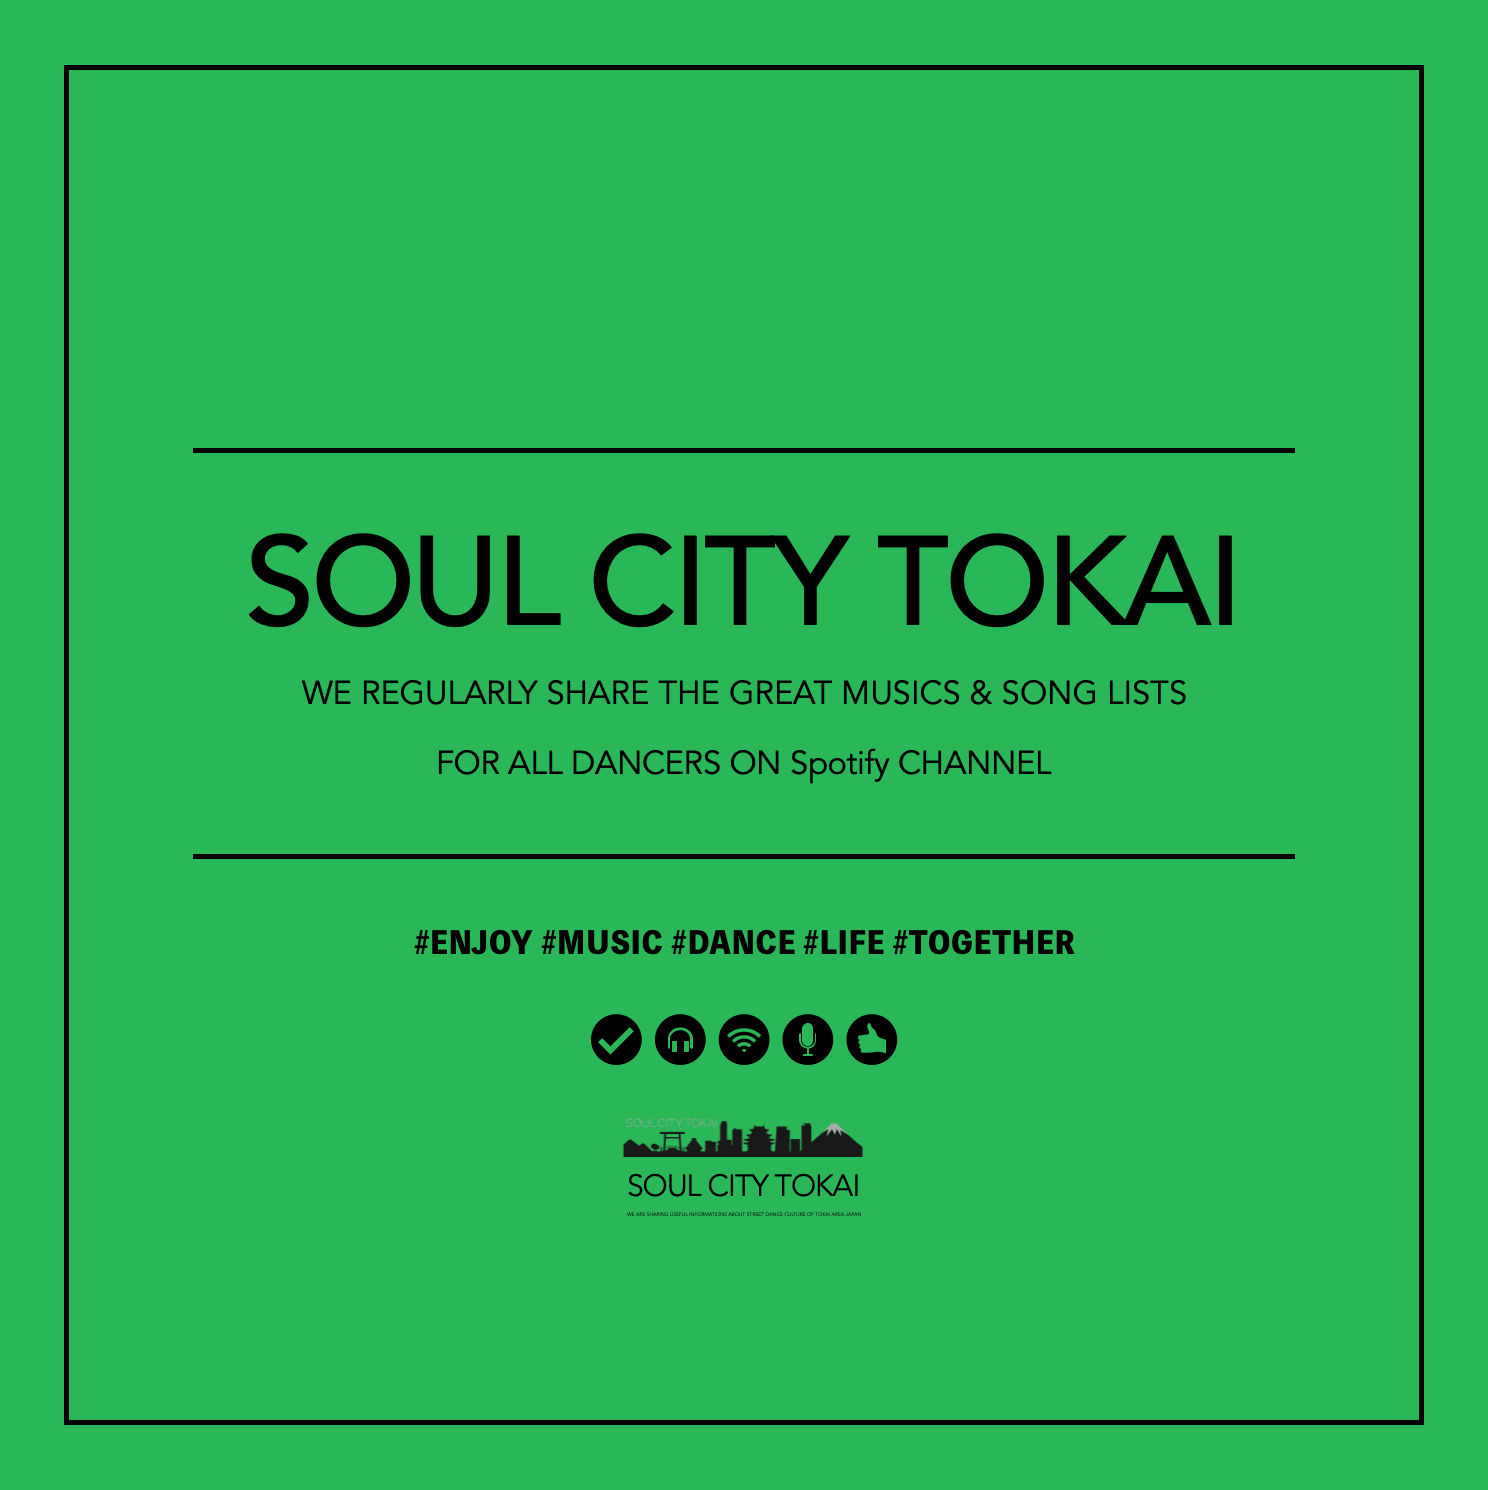 Focus Soul City Tokai Spotify Channel Soul City Tokai